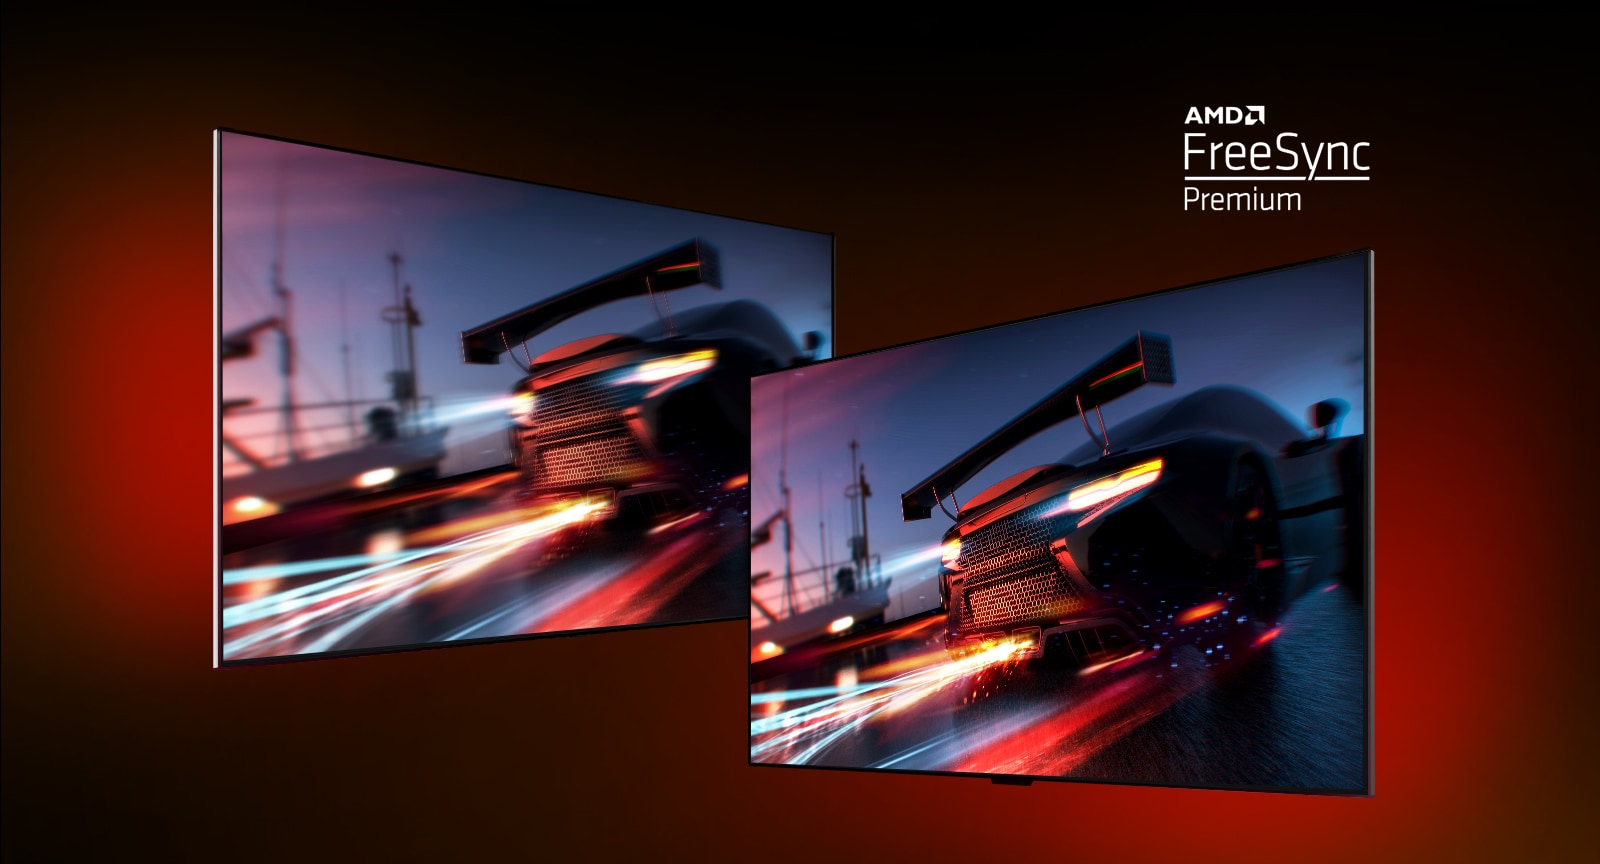 มีทีวีสองเครื่อง – ด้านซ้ายแสดงฉากเกมของ FORTNITE พร้อมรถแข่ง ทางด้านขวายังแสดงฉากเกมเดียวกันแต่แสดงภาพที่สว่างและชัดเจนยิ่งขึ้น ที่มุมบนขวาจะแสดงโลโก้พรีเมียมของ AMD FreeSync  